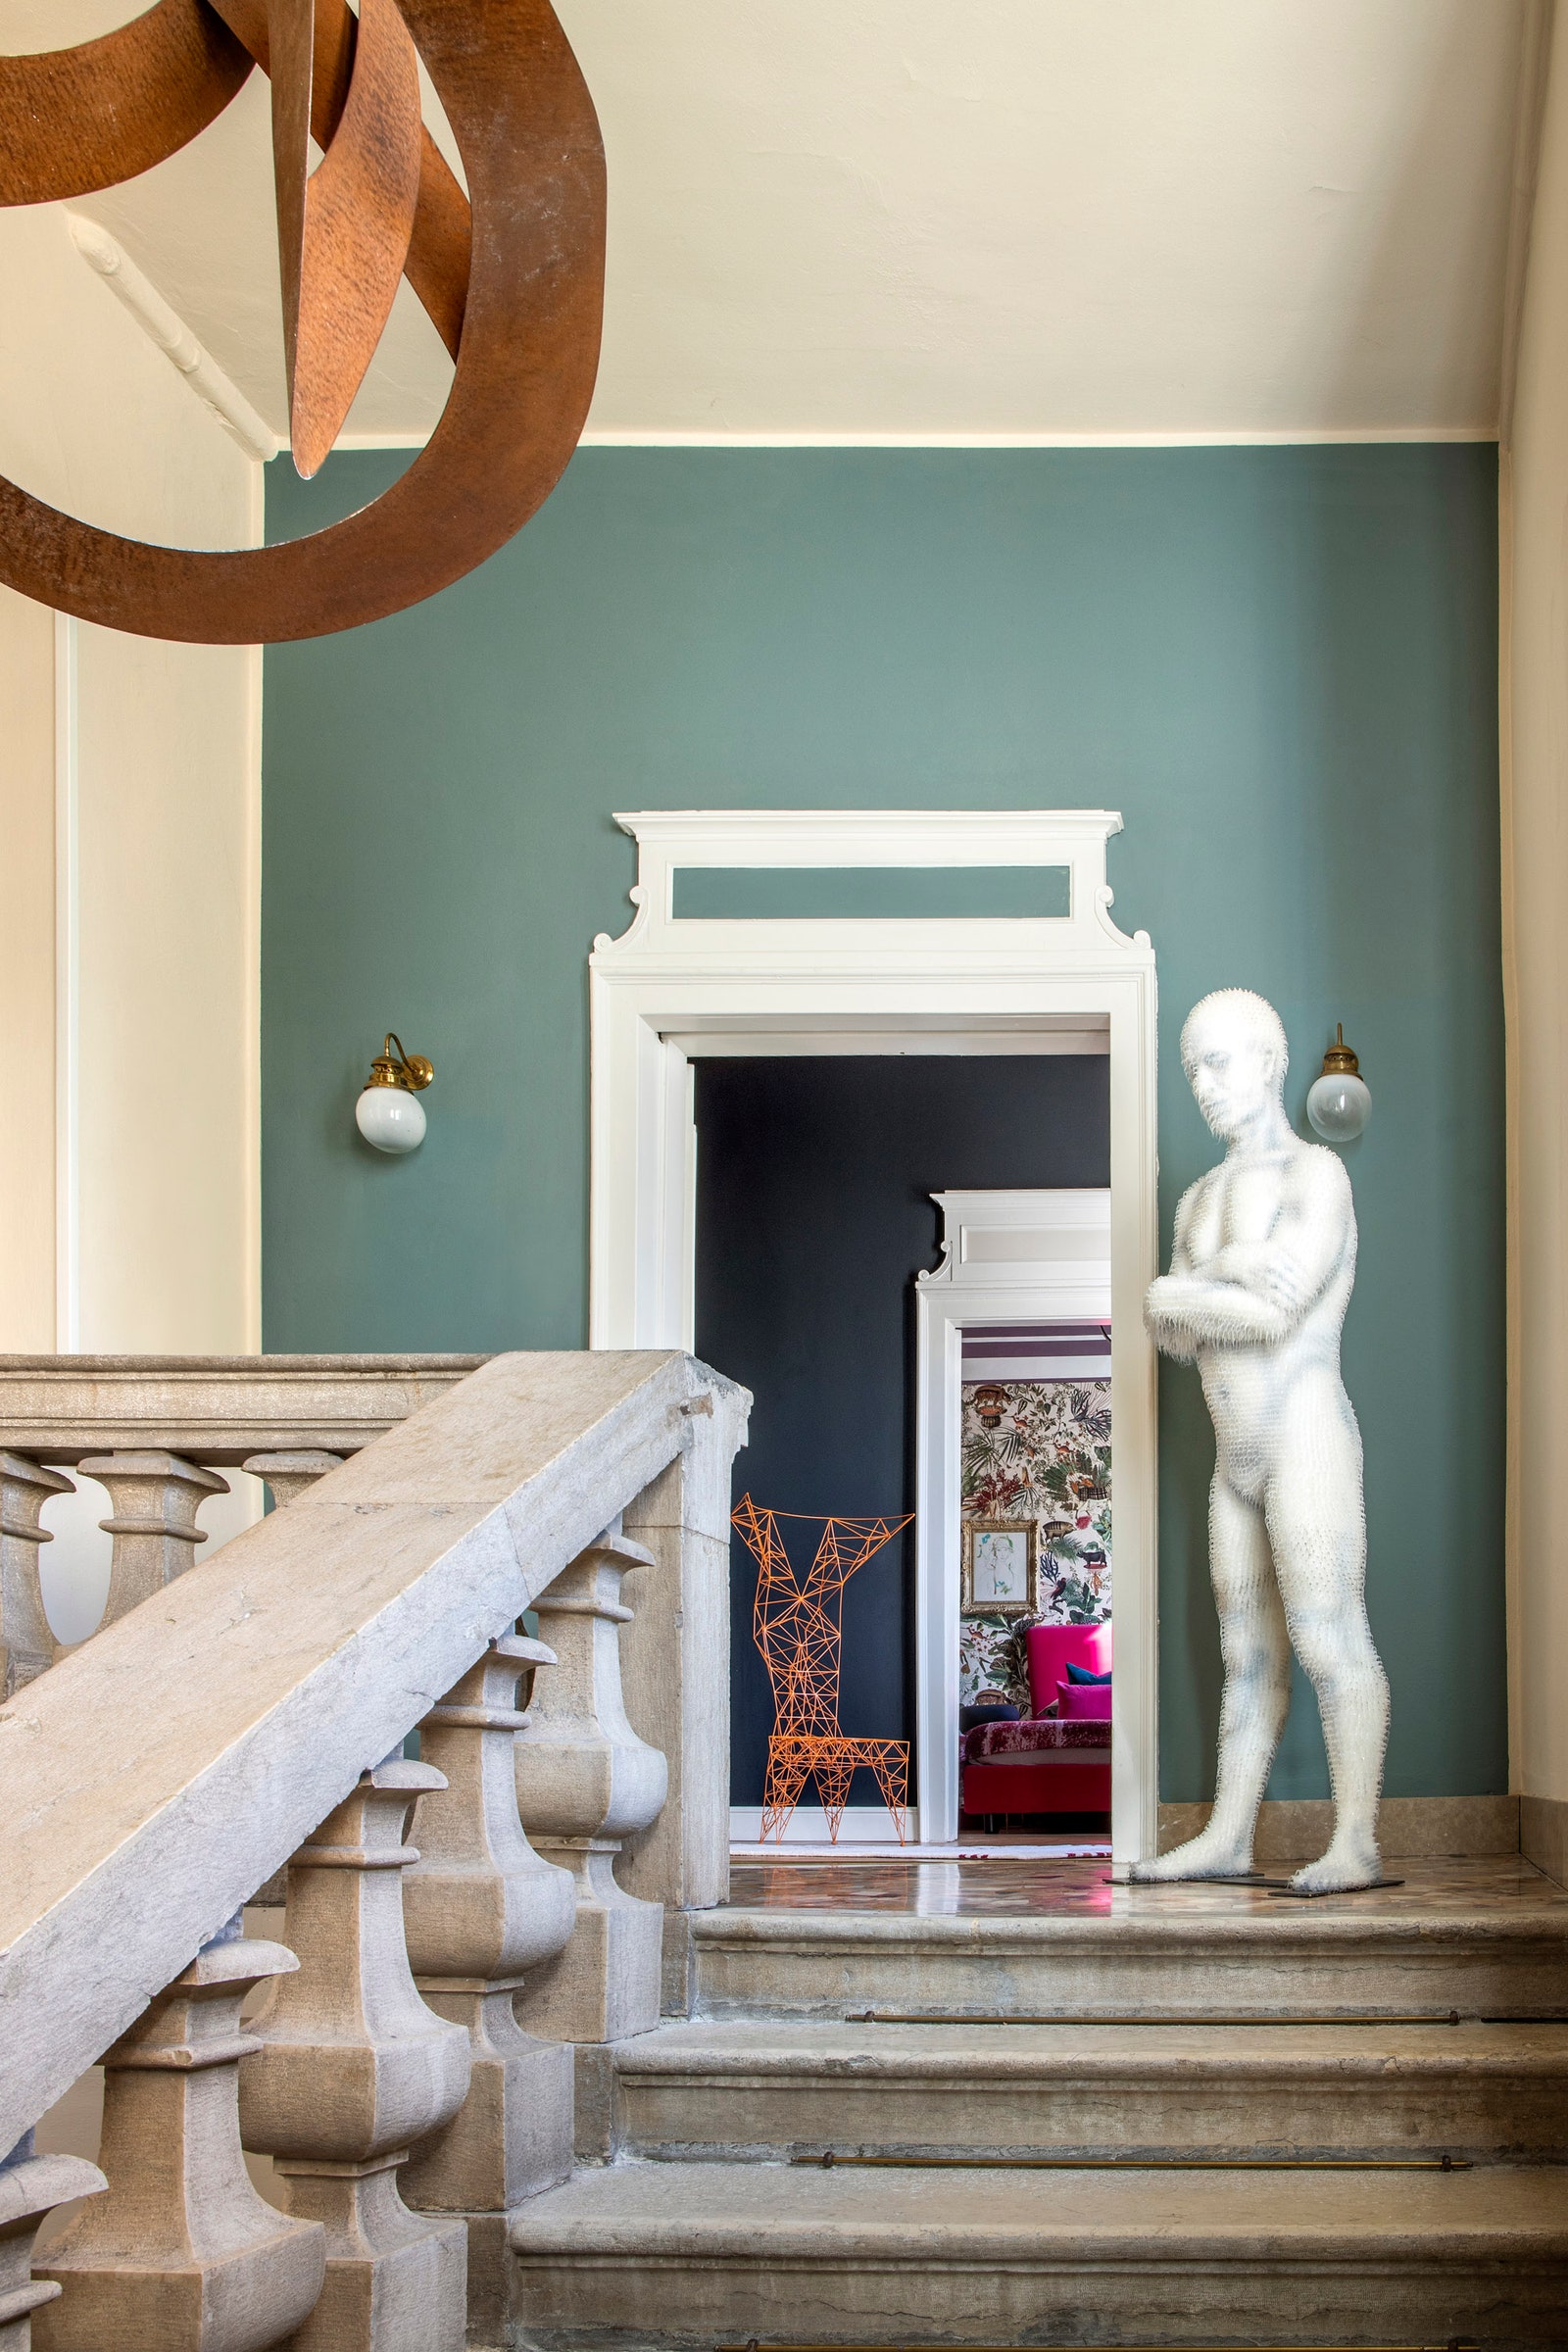 Заказчики Джорджо Барони — коллекционеры и живут в палаццо XVIII века постройки. На лестничной площадке стоит скульптура...